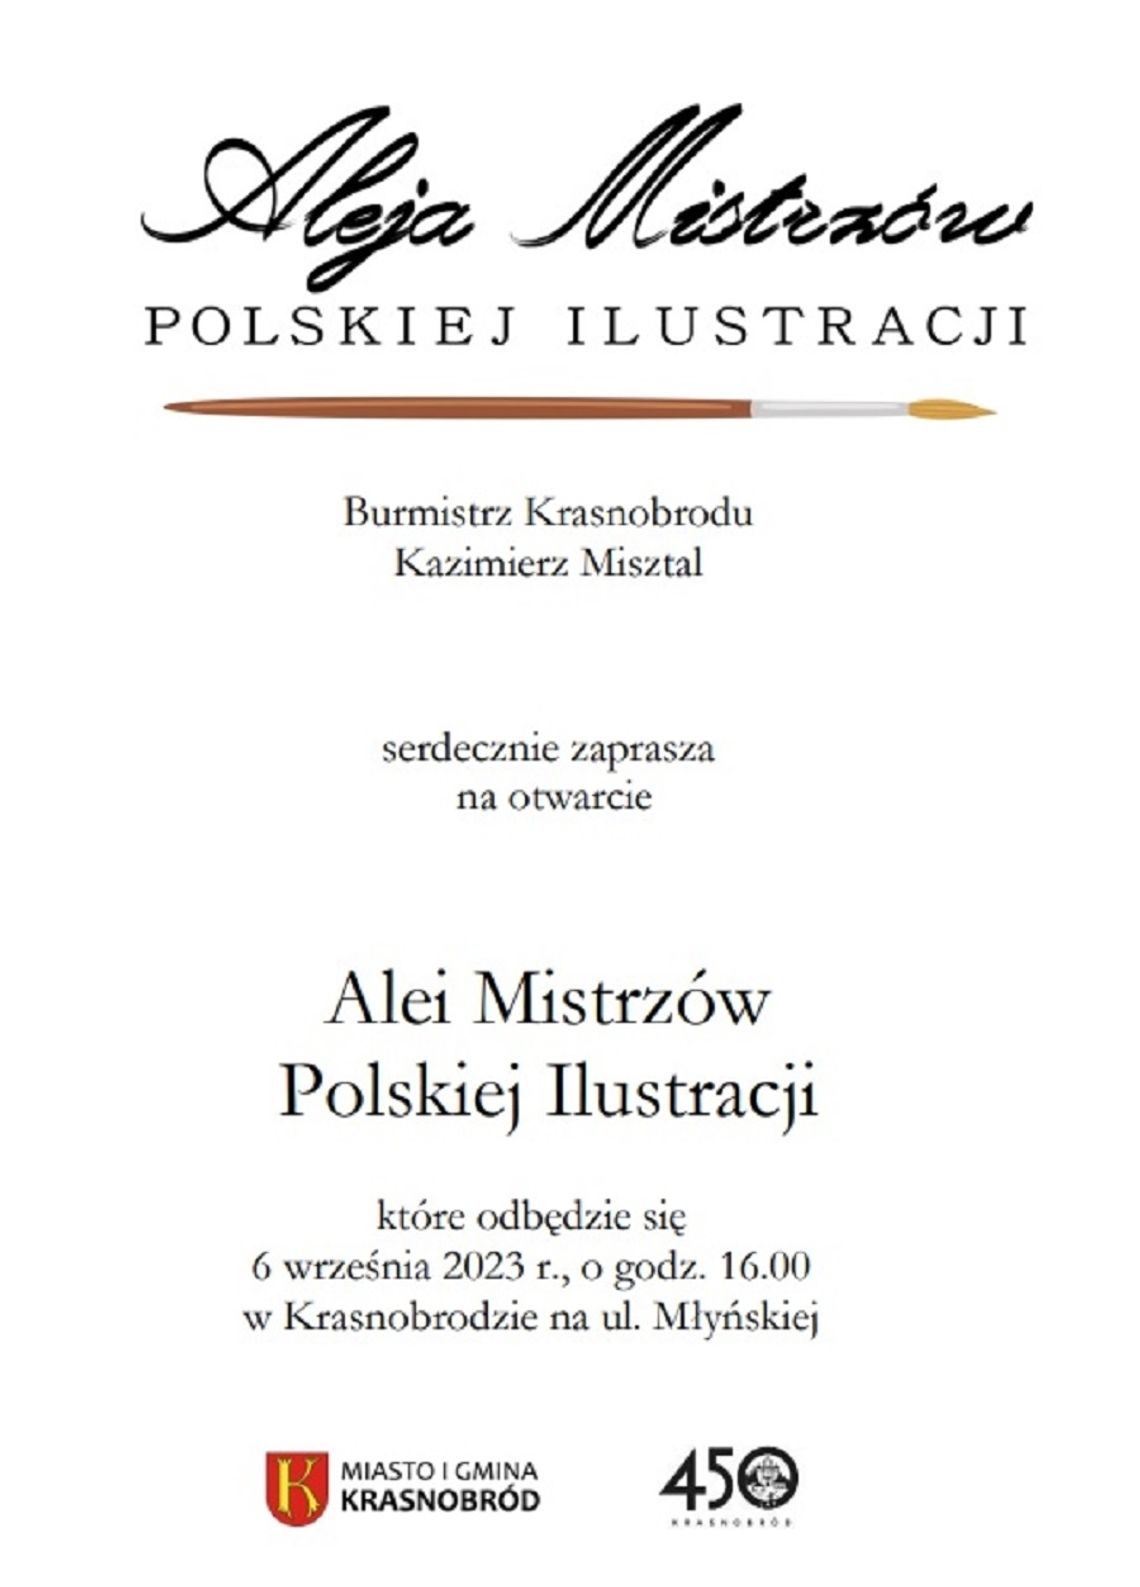 Burmistrz Krasnobrodu Kazimierz Misztal serdecznie zaprasza na otwarcie „Alei Mistrzów Polskiej Ilustracji”.